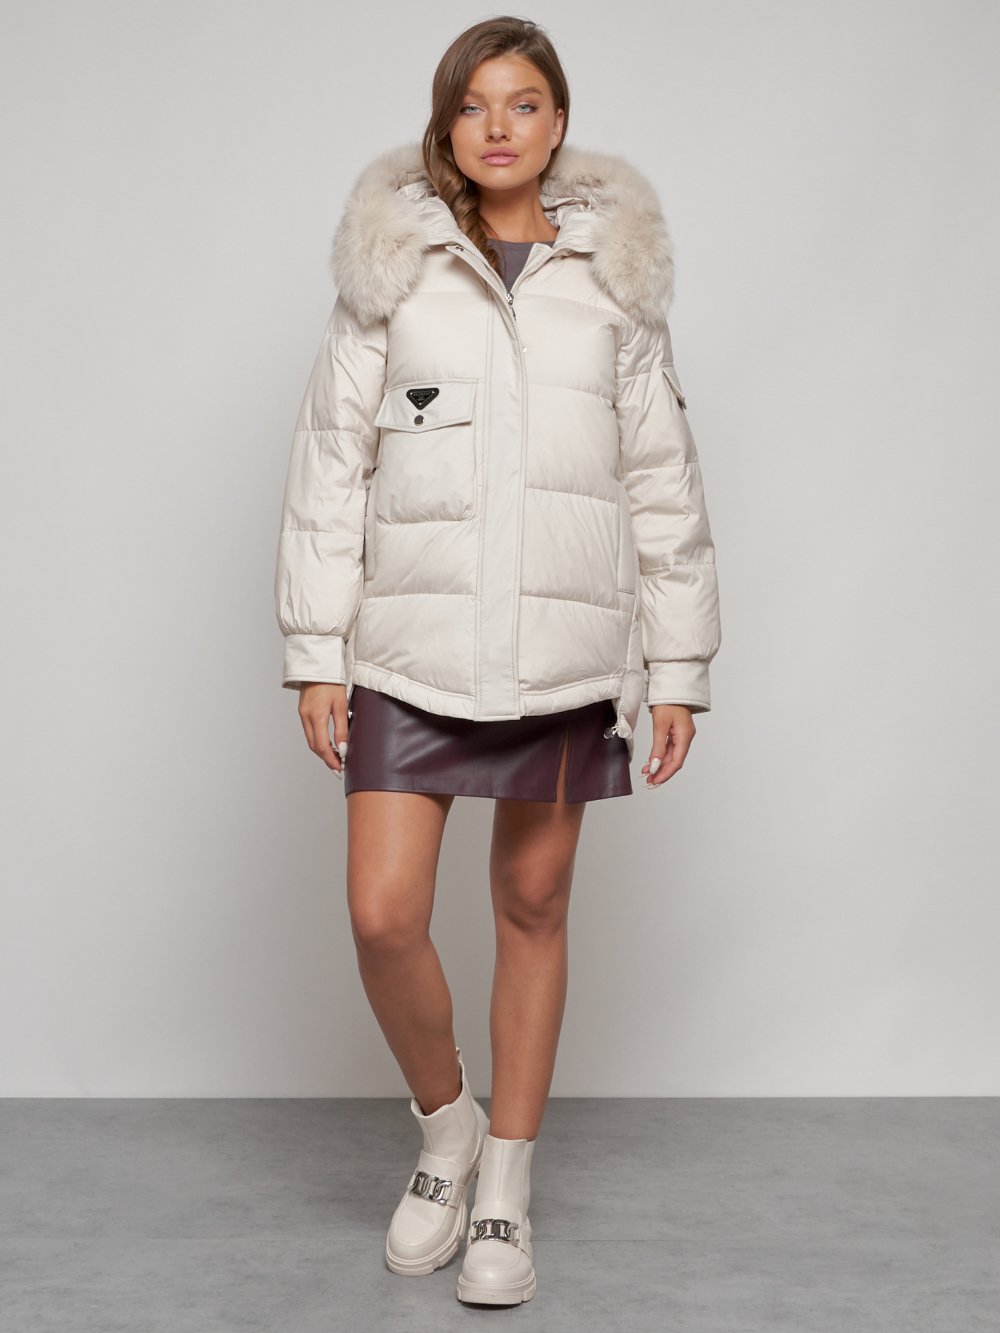 Купить куртку женскую оптом от производителя недорого в Москве 13301B